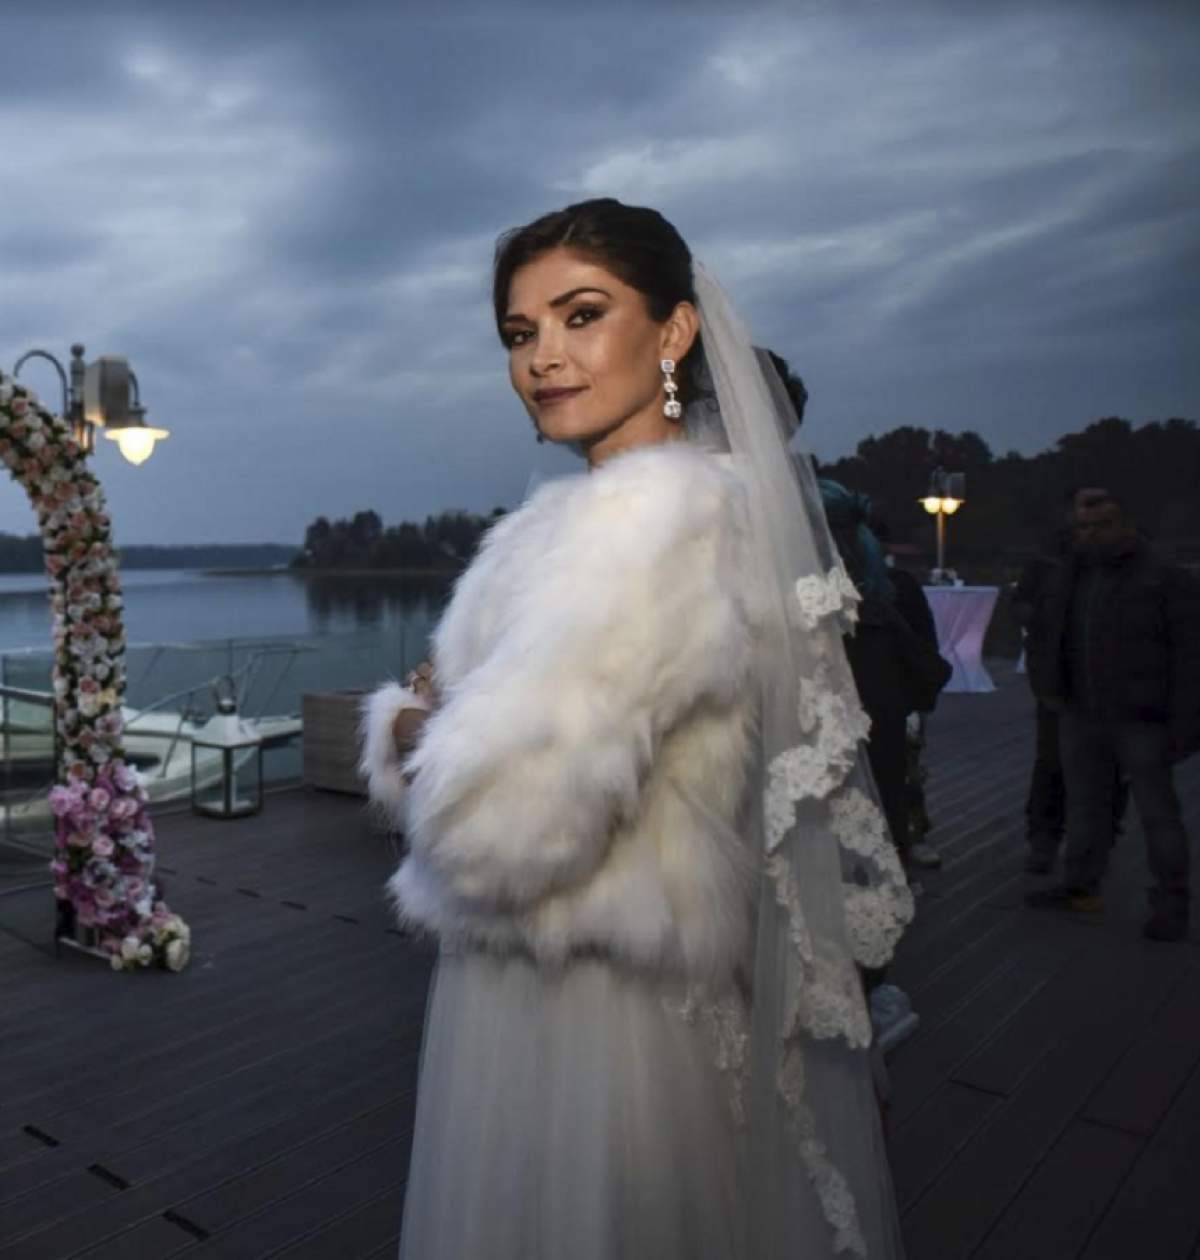 FOTO / Alina Pușcaș face din nou nuntă, gravidă! Imagini cu ea în rochie de mireasă